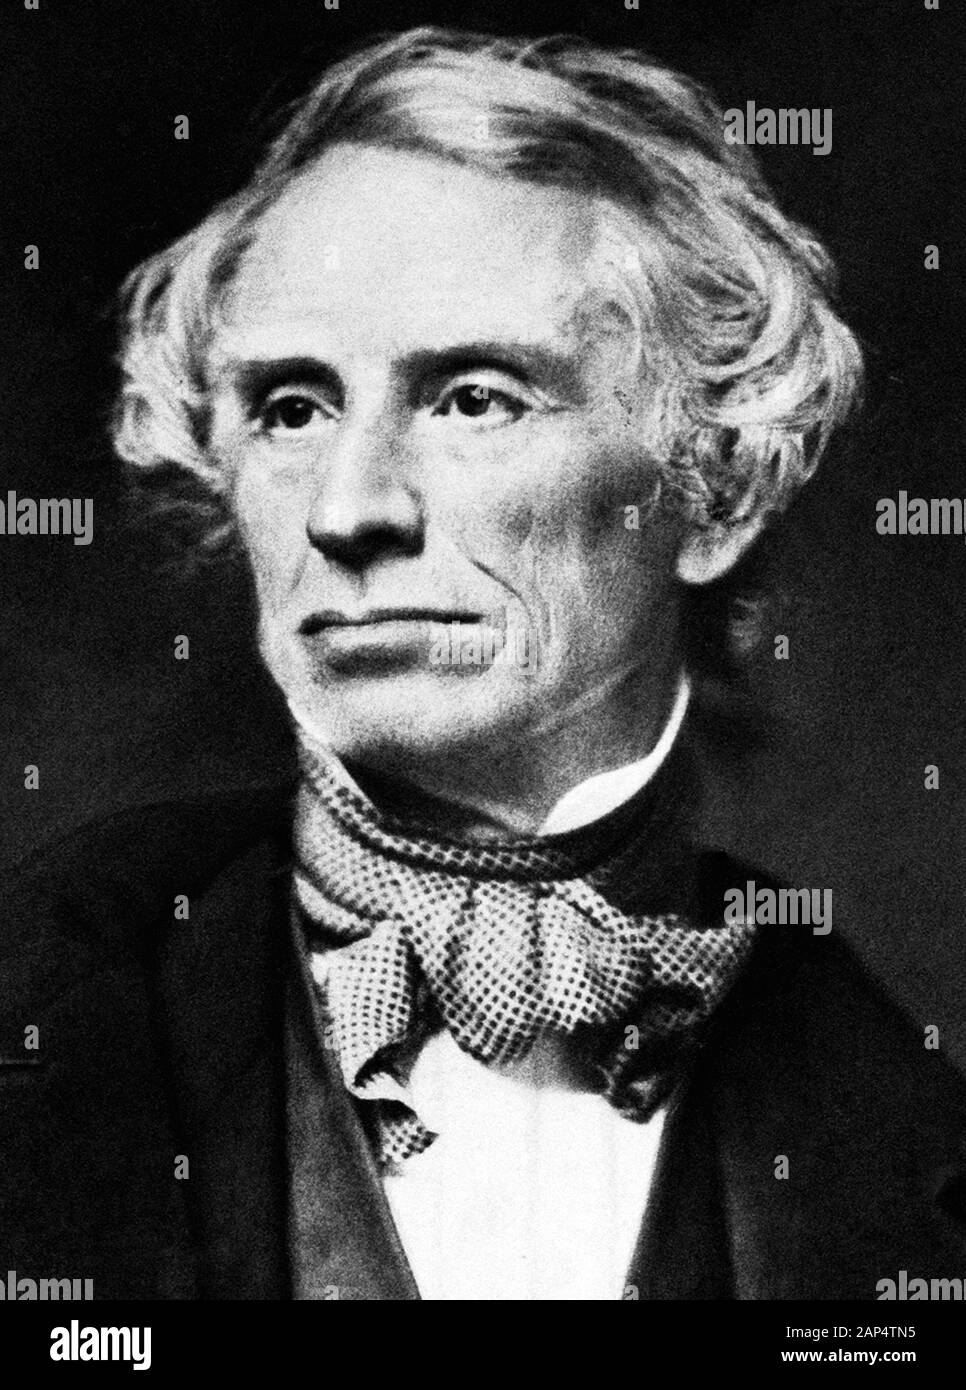 Ritratto d'epoca foto del pittore e inventore americano Samuel F B Morse (1791 – 1872) – pioniere nello sviluppo del telegrafo elettrico e co-creatore di Morse Code. Foto circa 1855 di Mathew B Brady. Foto Stock